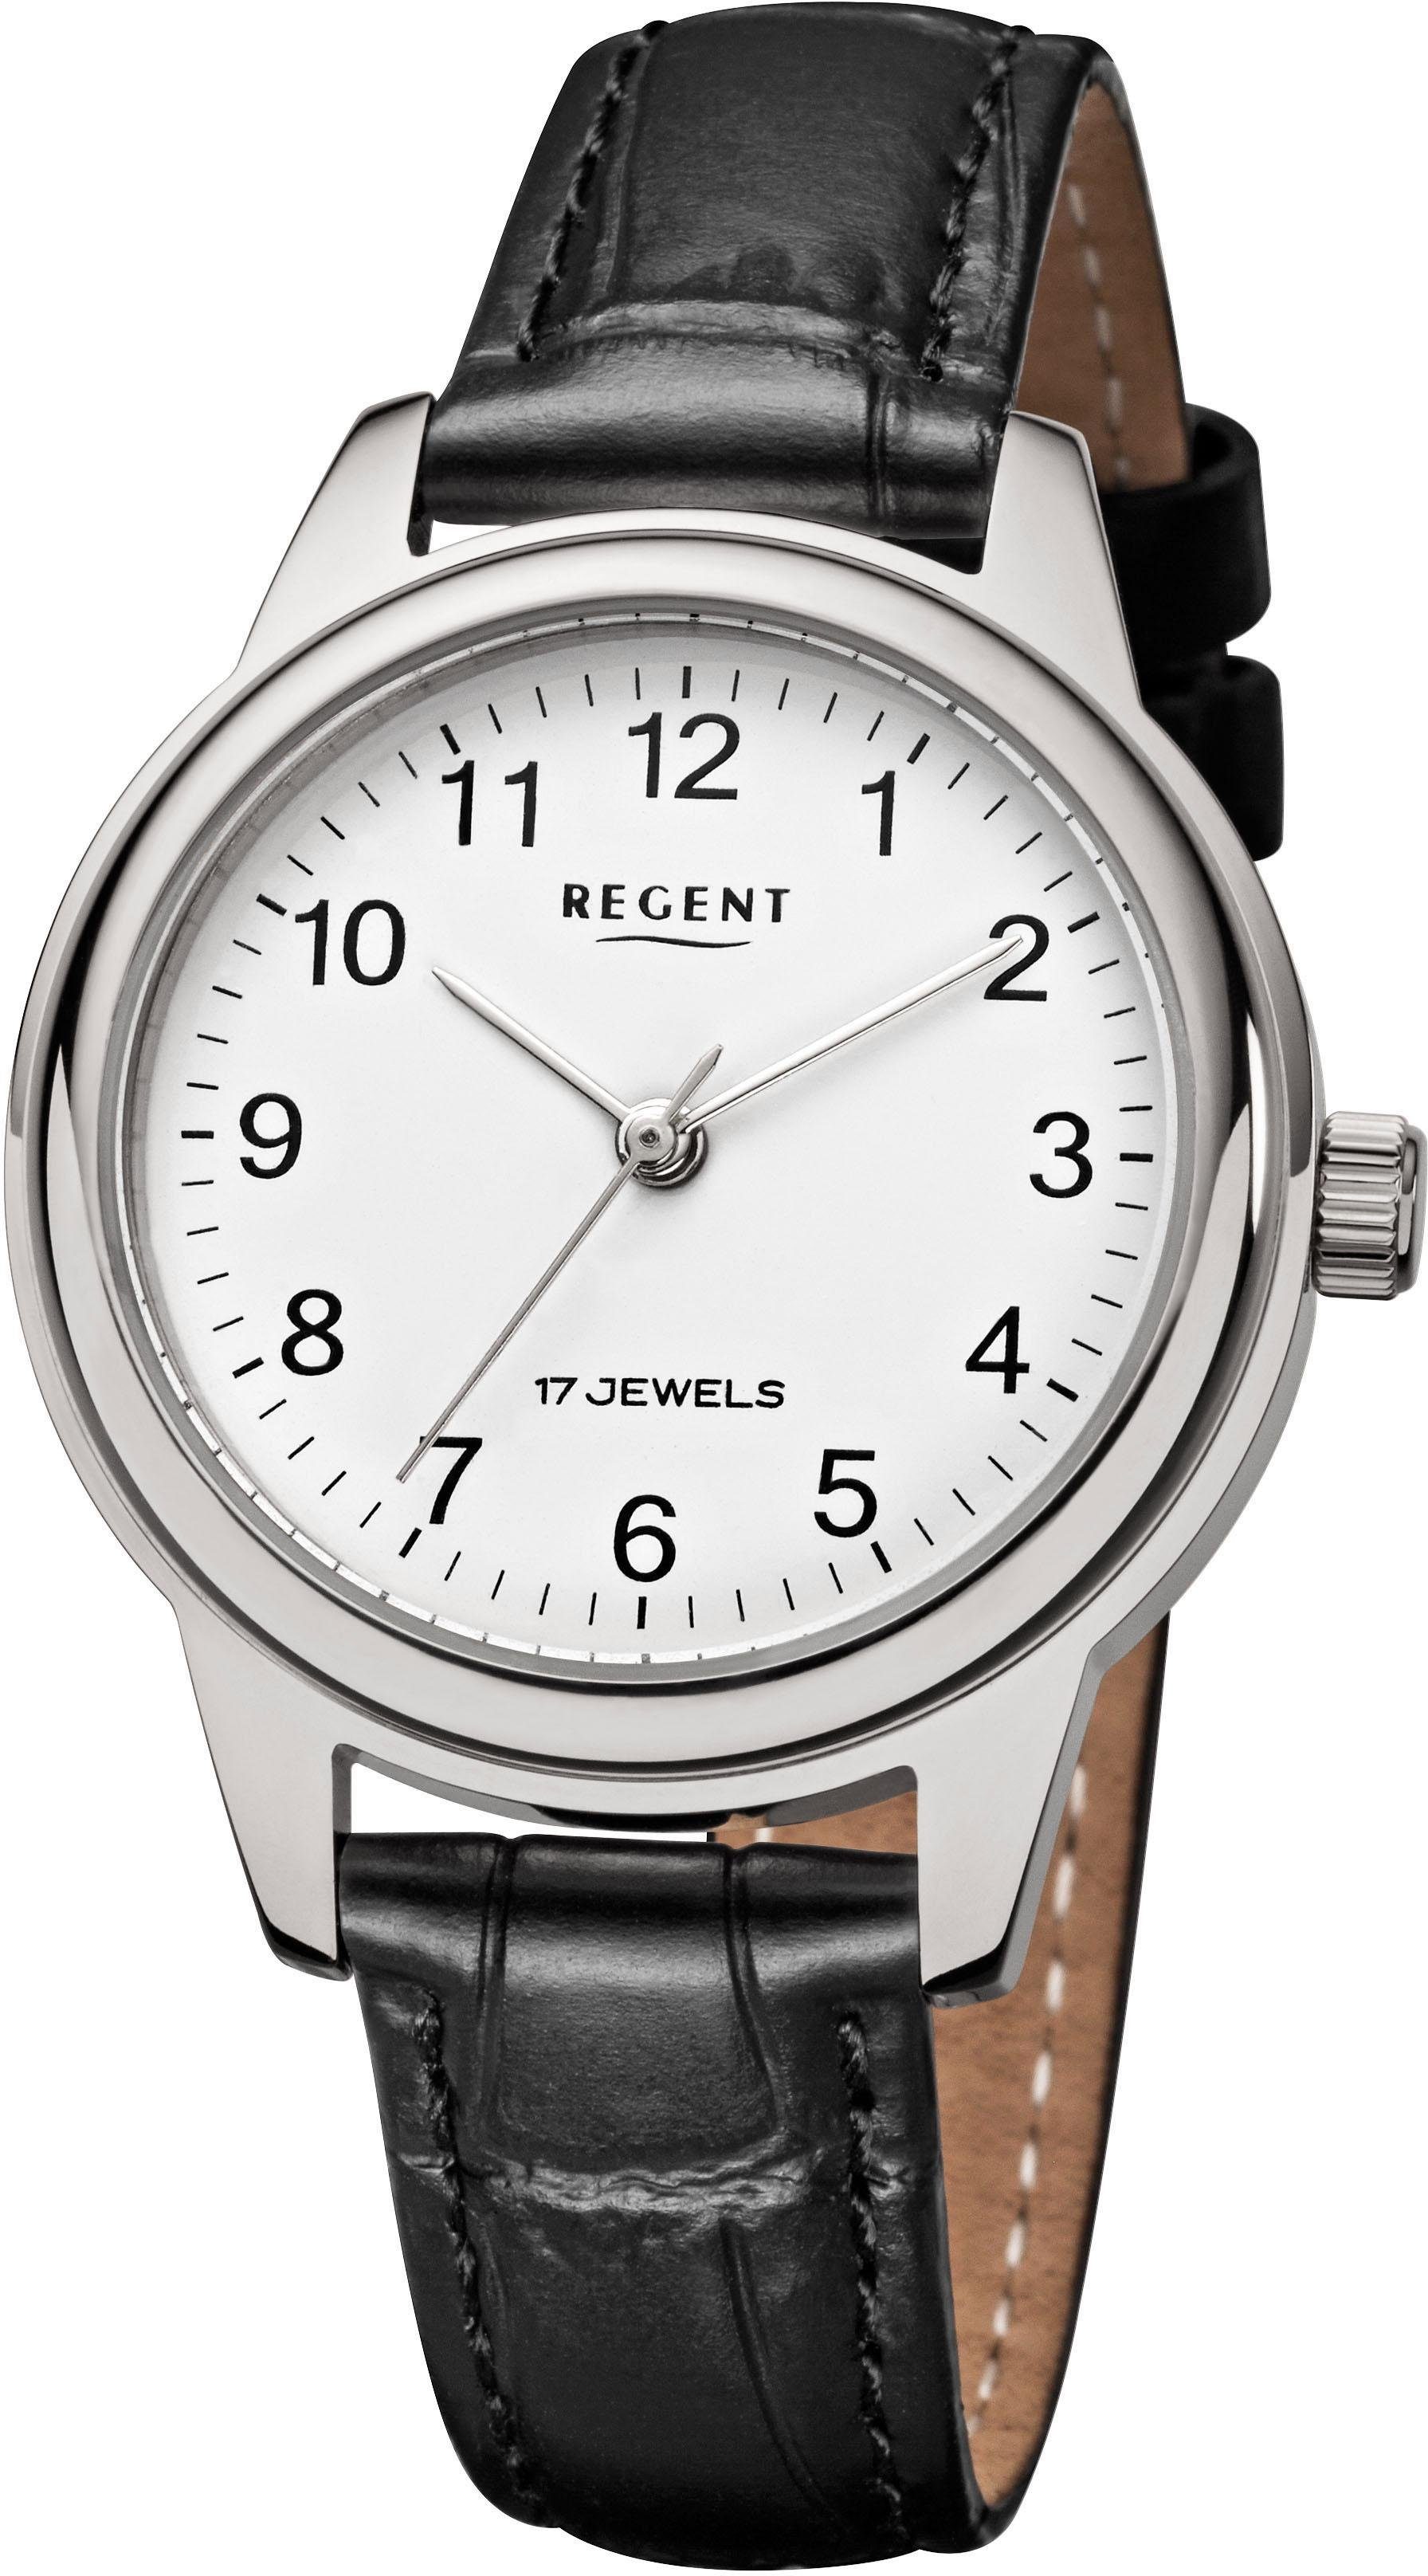 Regent Mechanische Uhr »3601, F957«, Gehäuse aus Edelstahl, Ø ca. 31 mm  online kaufen | OTTO